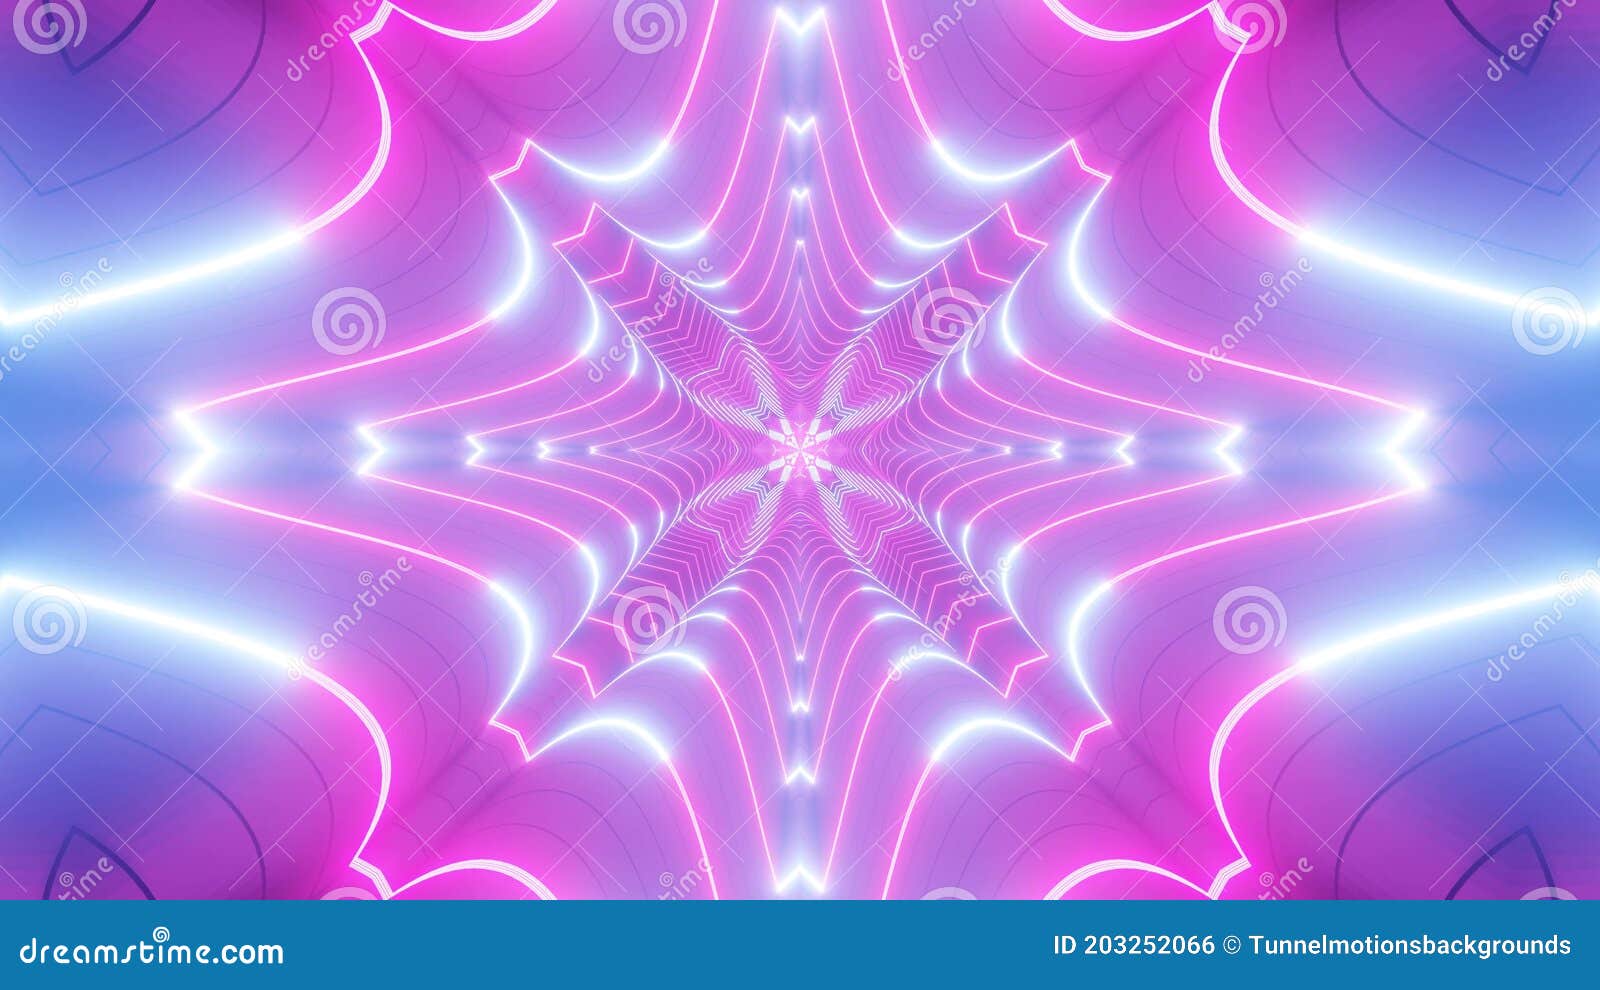 Khám phá hình ảnh đường hầm neon 3D hồng và xanh đổi màu trên hình nền hồng 4K đầy bắt mắt và nổi bật. Chỉ cần một cái nhìn, bạn sẽ bị cuốn hút vào không gian ảo diệu này. Hãy nhanh tay tải về và cảm nhận sự phấn khích khi đổi màu trên màn hình của mình.